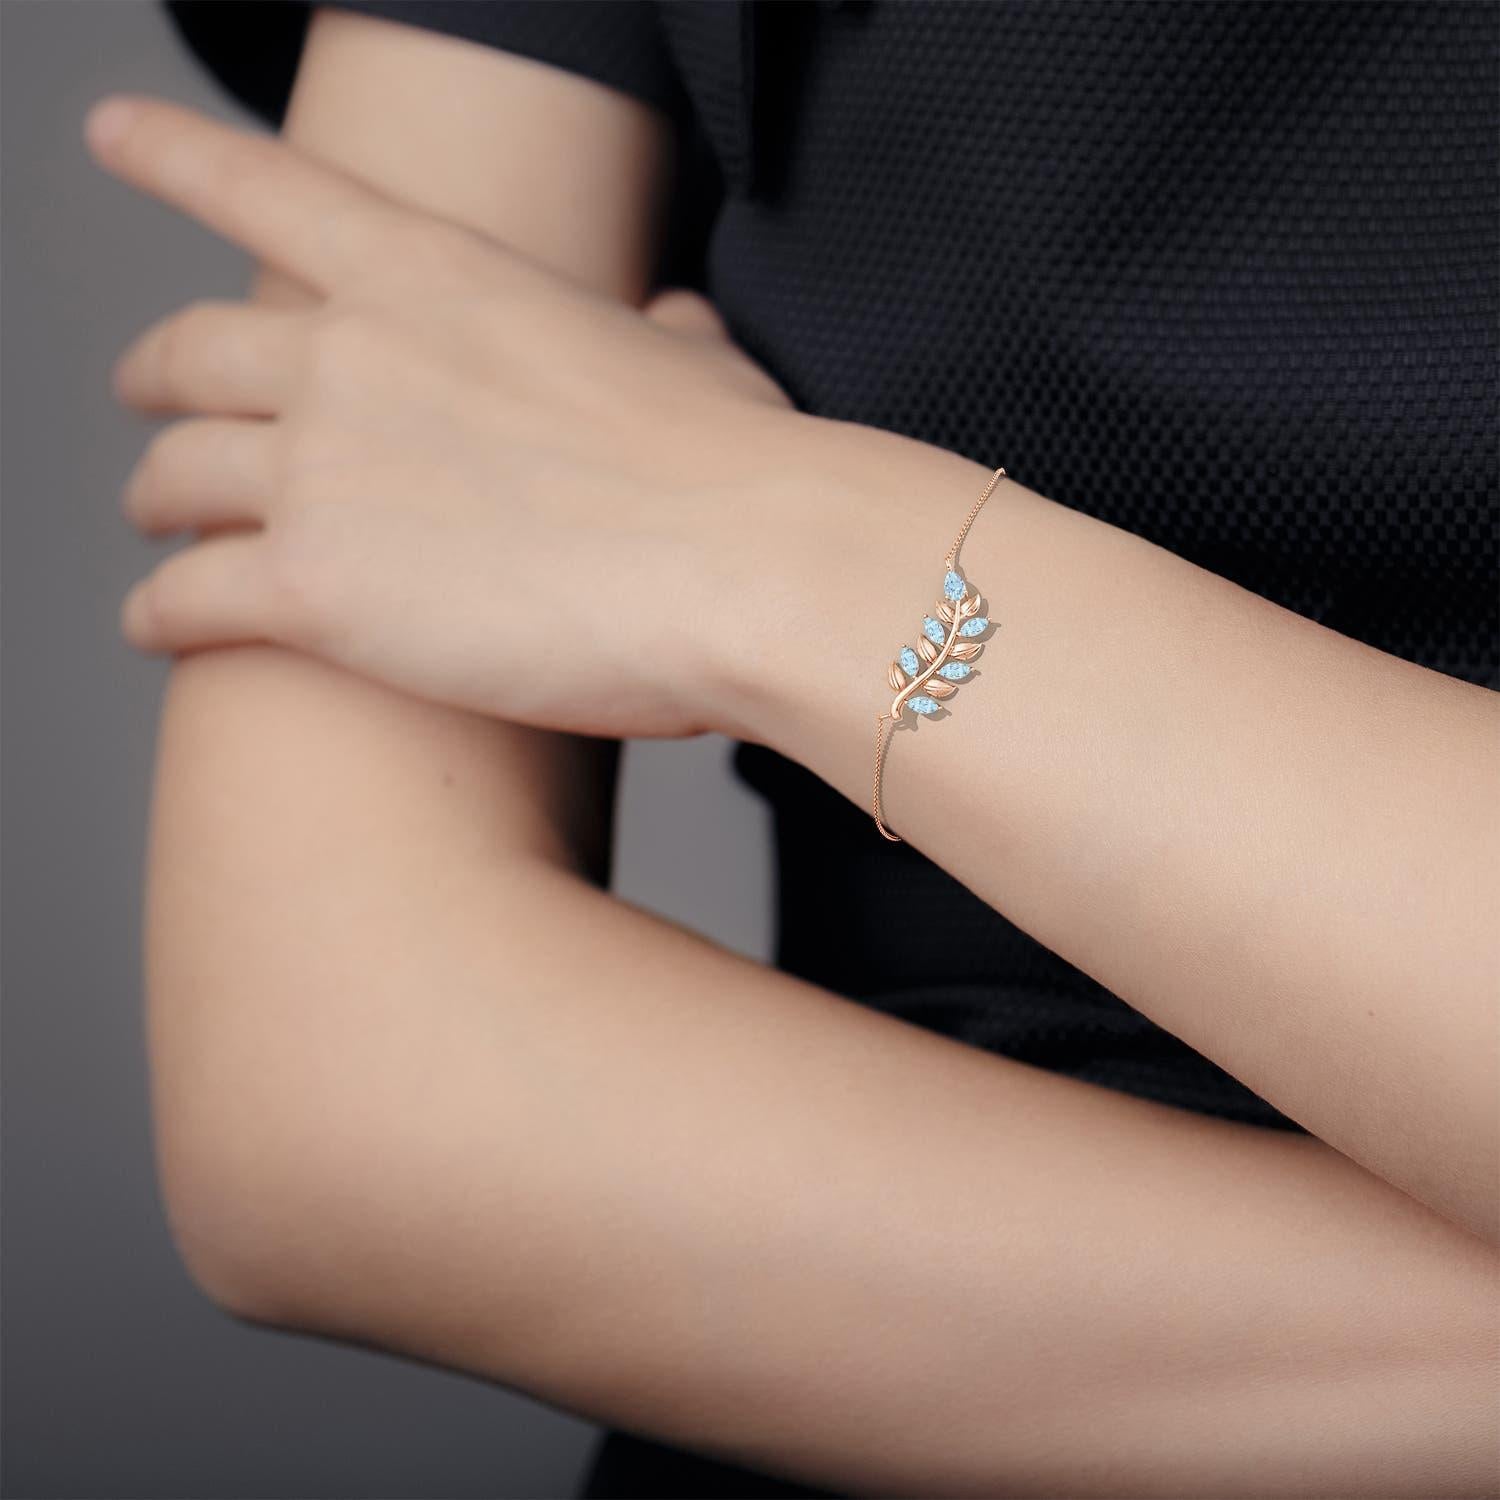 Dieses Armband mit Olivenzweig ist ein wunderschönes Symbol für Frieden und Sieg. Er ist mit birnen- und marquiseförmigen Aquamarinen besetzt, die einen eisblauen Farbton verströmen. Die Blattmotive verstärken den Gesamtreiz dieses Armbands aus 14